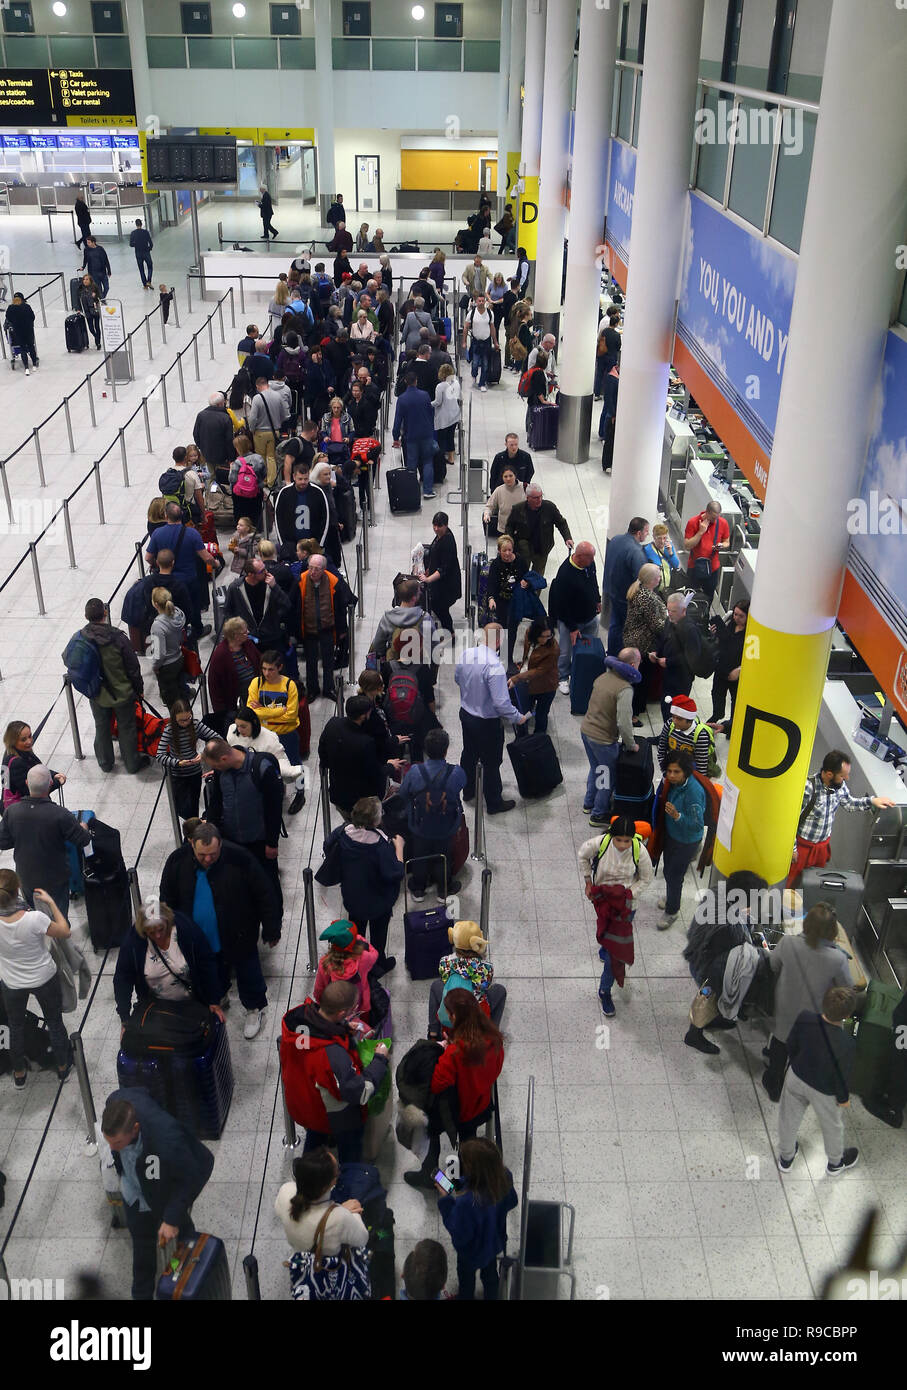 Passagiere Warteschlange für Flüge am Flughafen Gatwick, wie der Flughafen und Airlines den Rückstand von Flügen durch die drohne Incident verzögert zu löschen Anfang dieser Woche arbeiten. Stockfoto